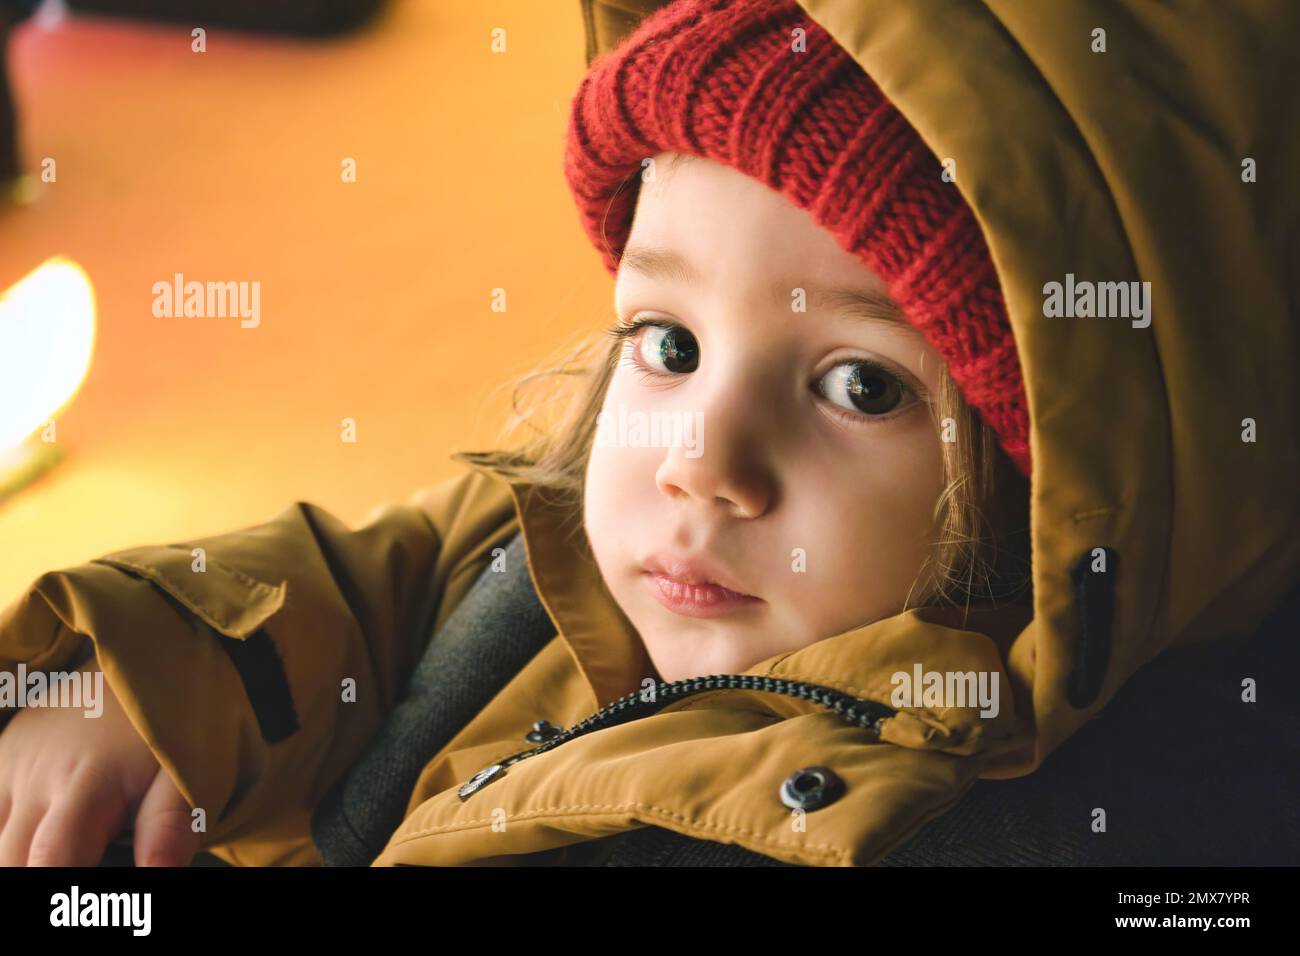 Un jeune garçon blanc de race blanche portant des vêtements d'hiver épais regardant directement l'appareil photo Banque D'Images